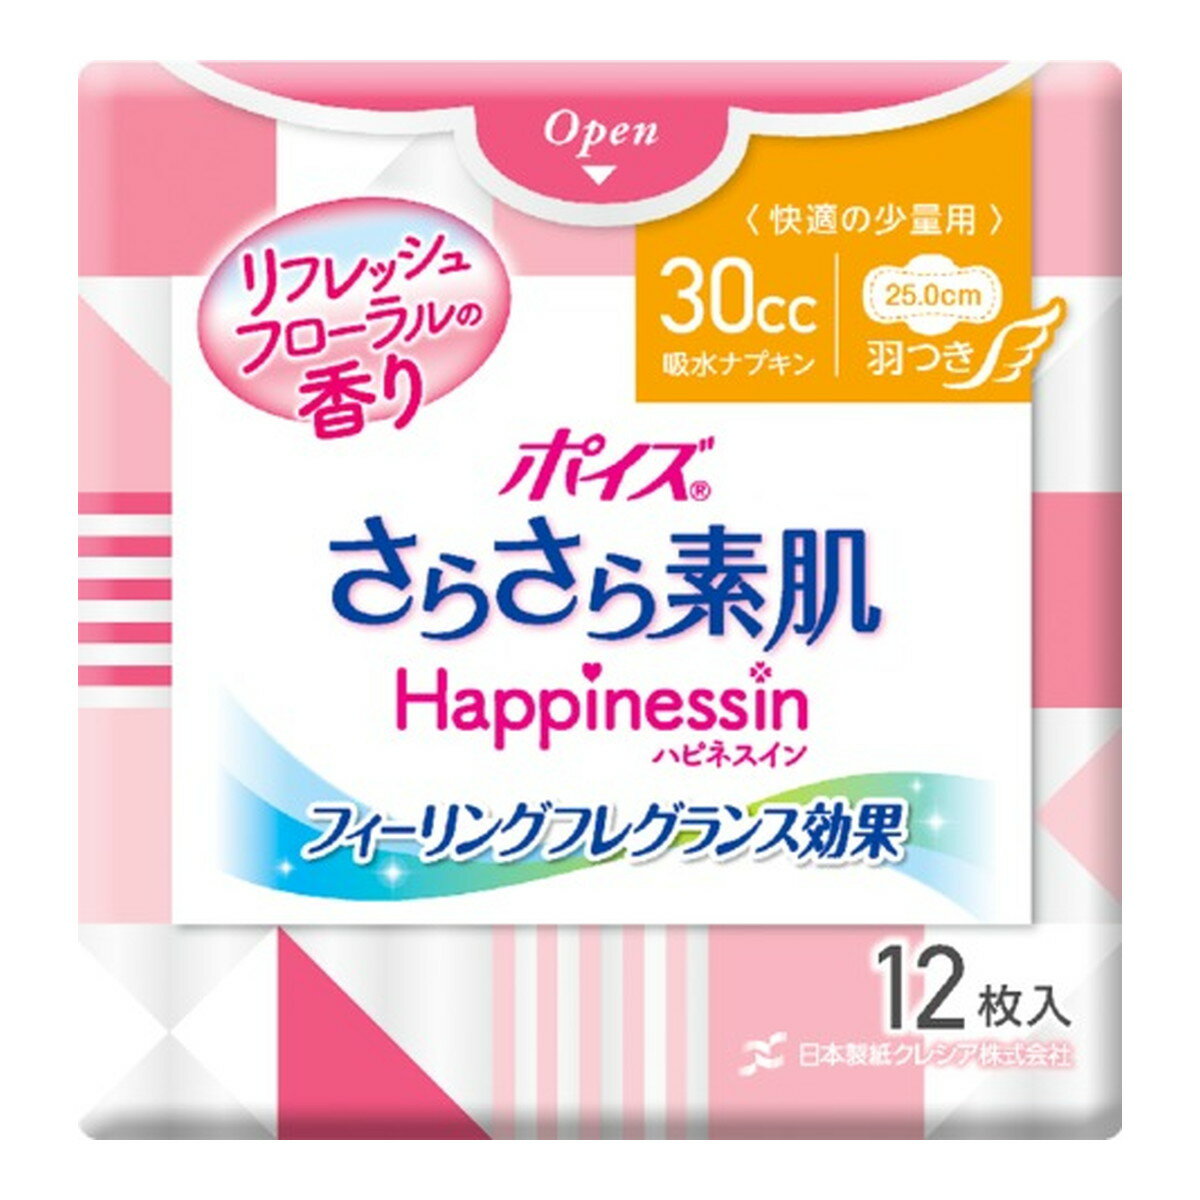 日本製紙 クレシア ポイズ さらさら素肌 Happinessin 吸水ナプキン 30cc 羽つき 快適の少量用 リフレッシュフローラルの香り 12枚入